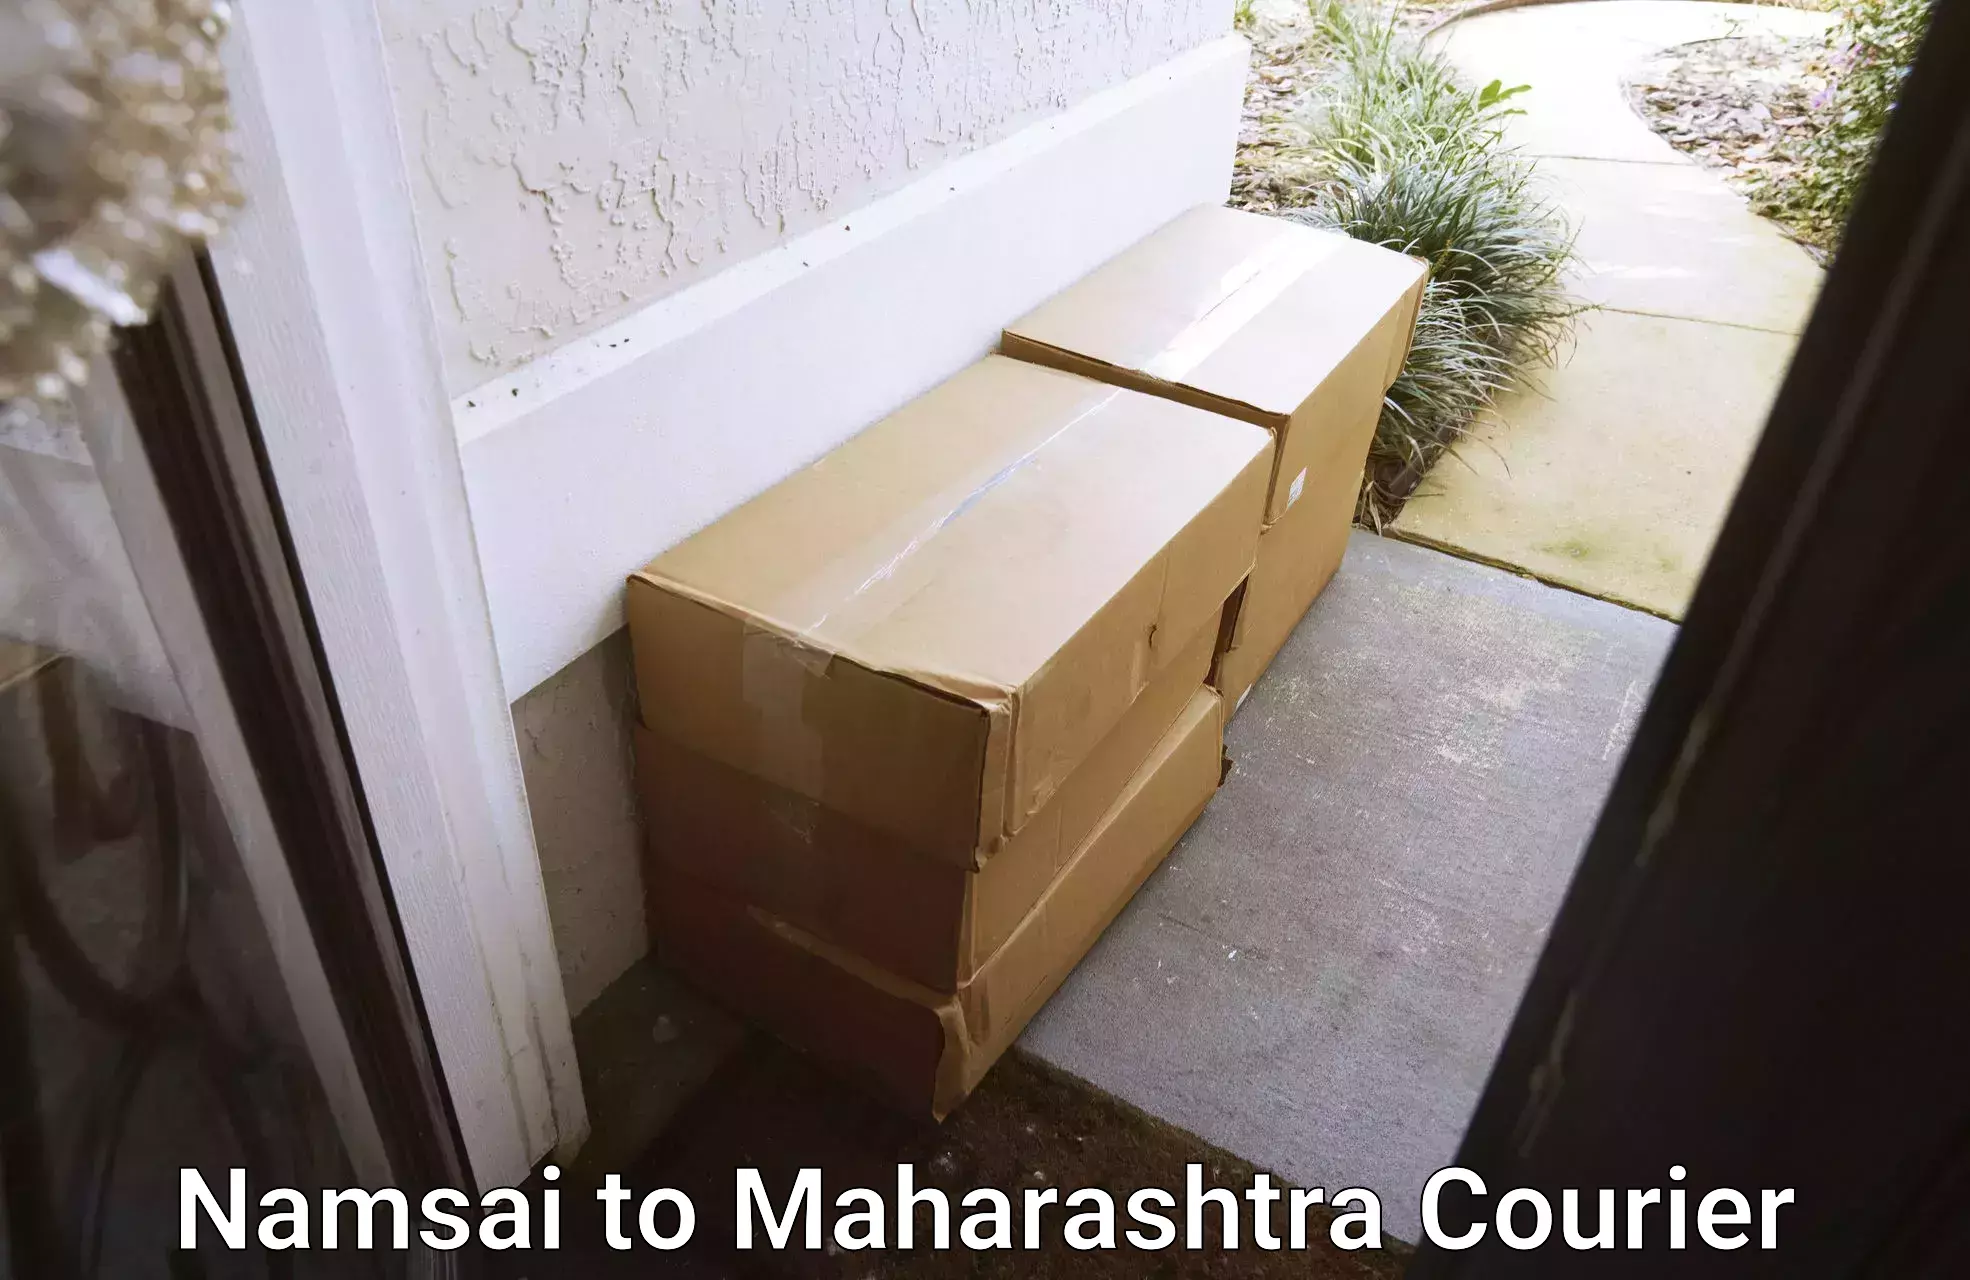 Shipping and handling Namsai to Maharashtra